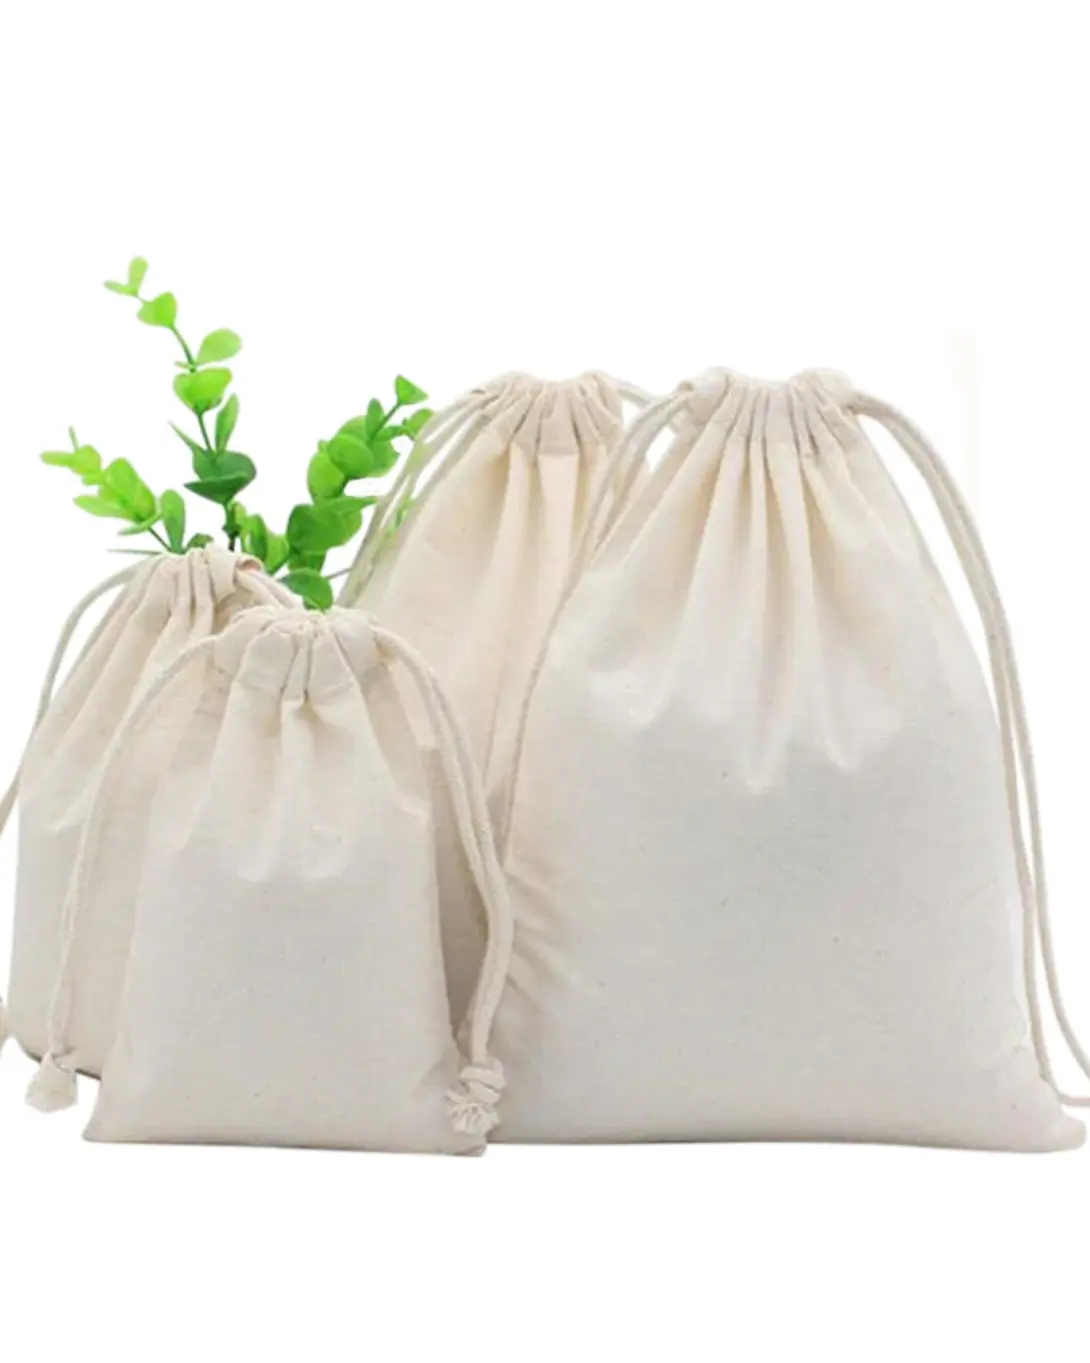 Einkaufstasche Stoff Baumwolle Musselin-Schmuckbeutel Taschen Baumwolle Kordelzugbeutel